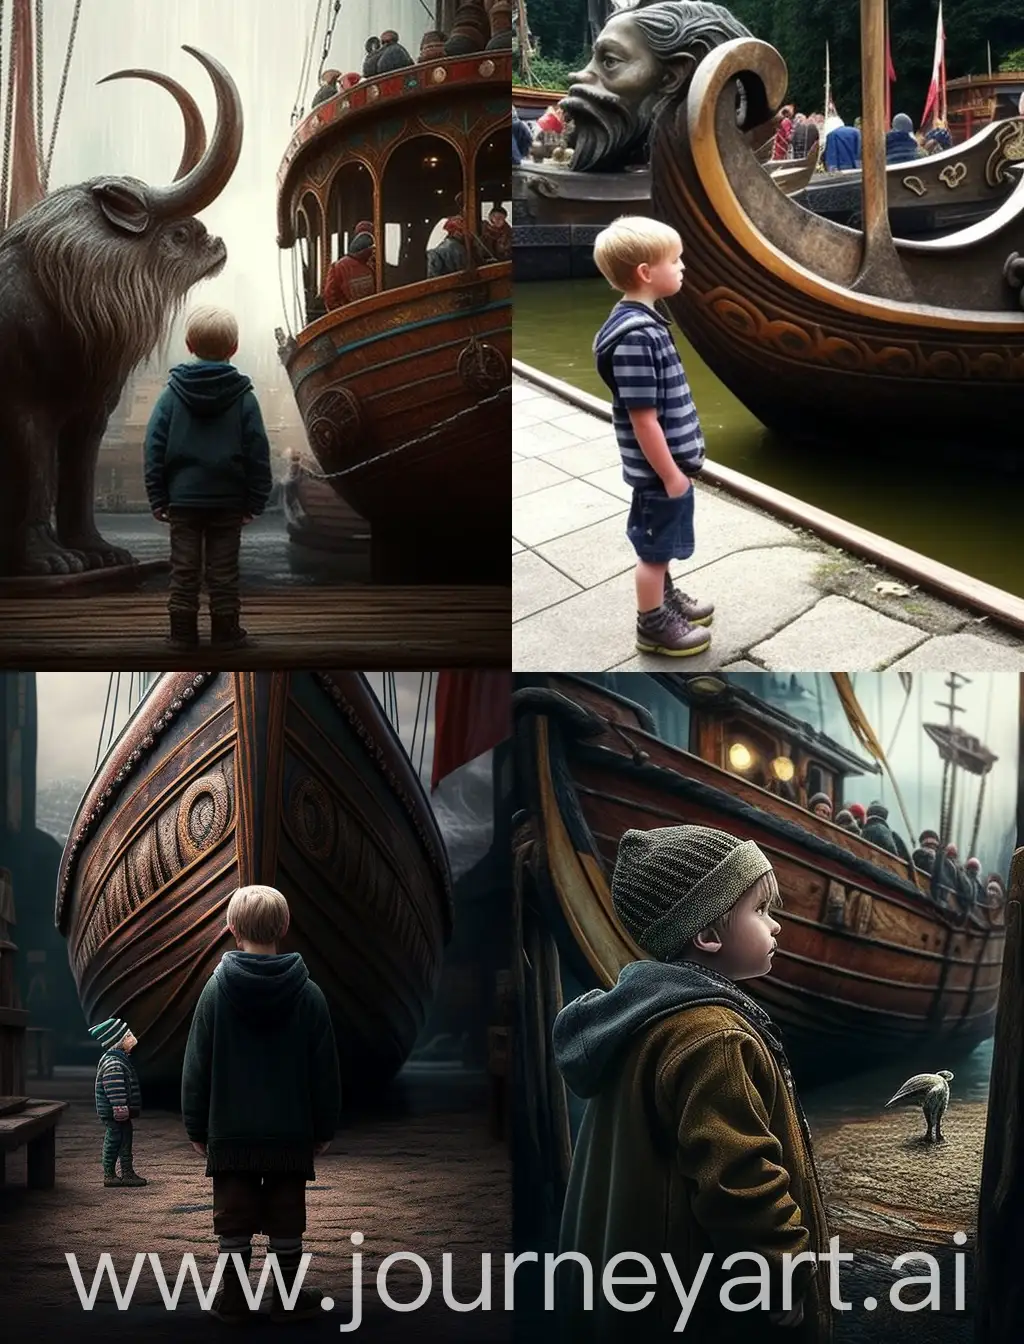 мальчик в парке аттракционов  в большой очереди на аттракцион корабль викингов а слева от аттракциона сидит старик попрошайка
